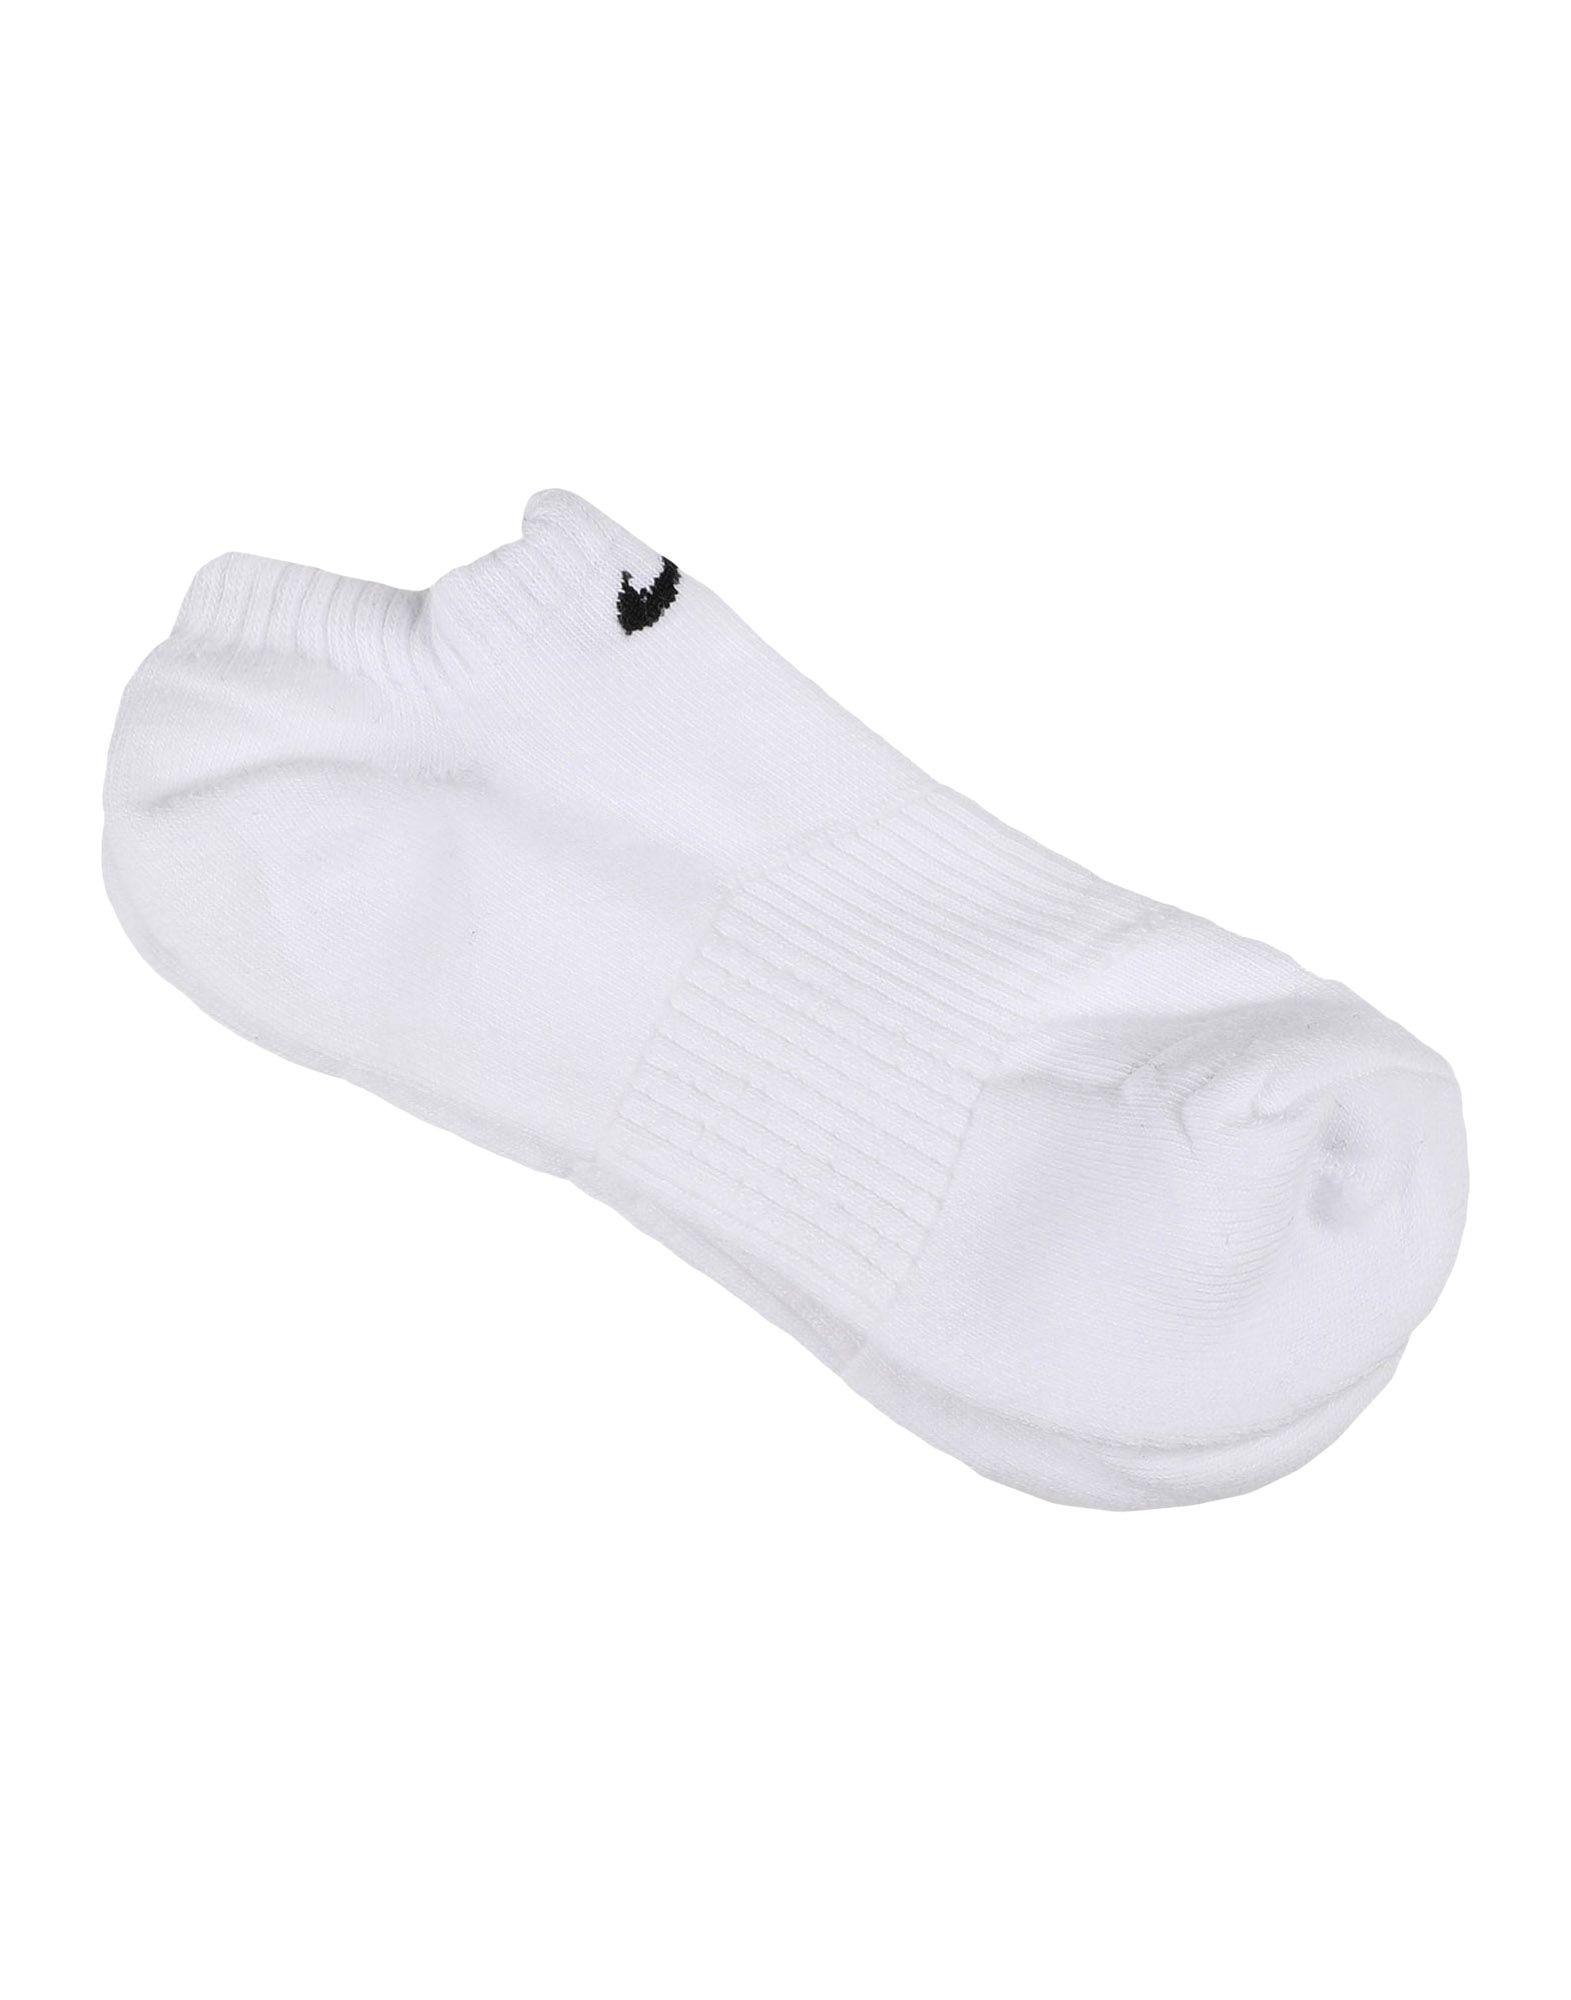 nike short white socks